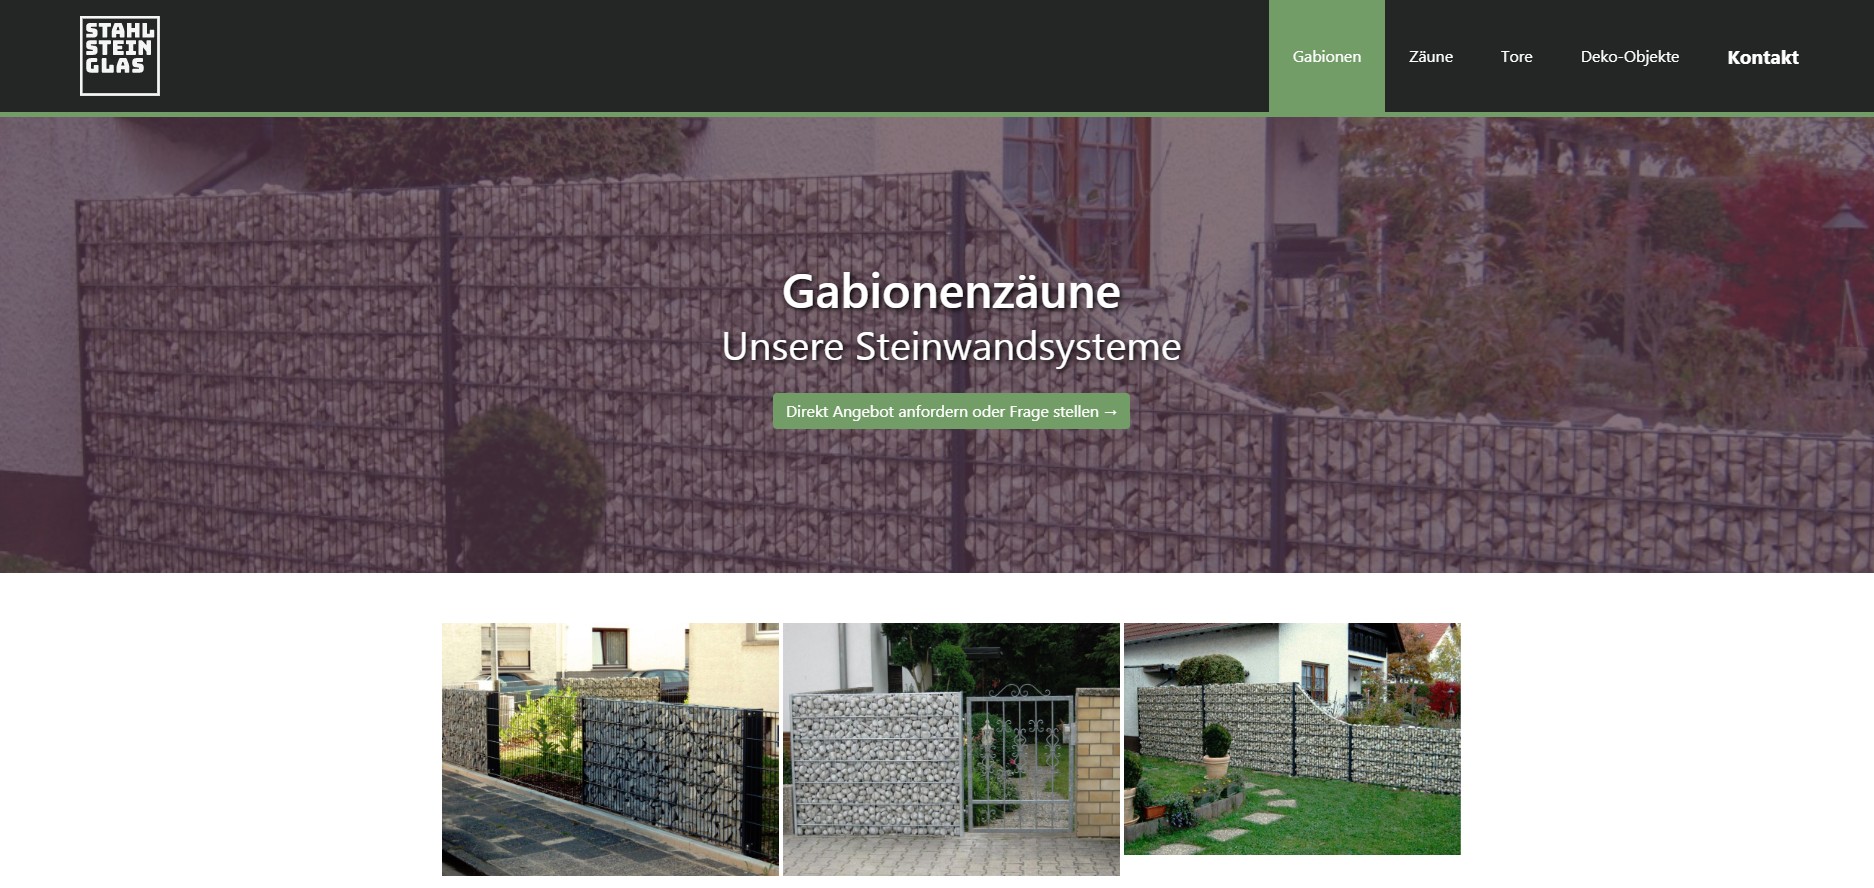 Webseite zu Gabionenzäunen von stahl-stein-glas.de